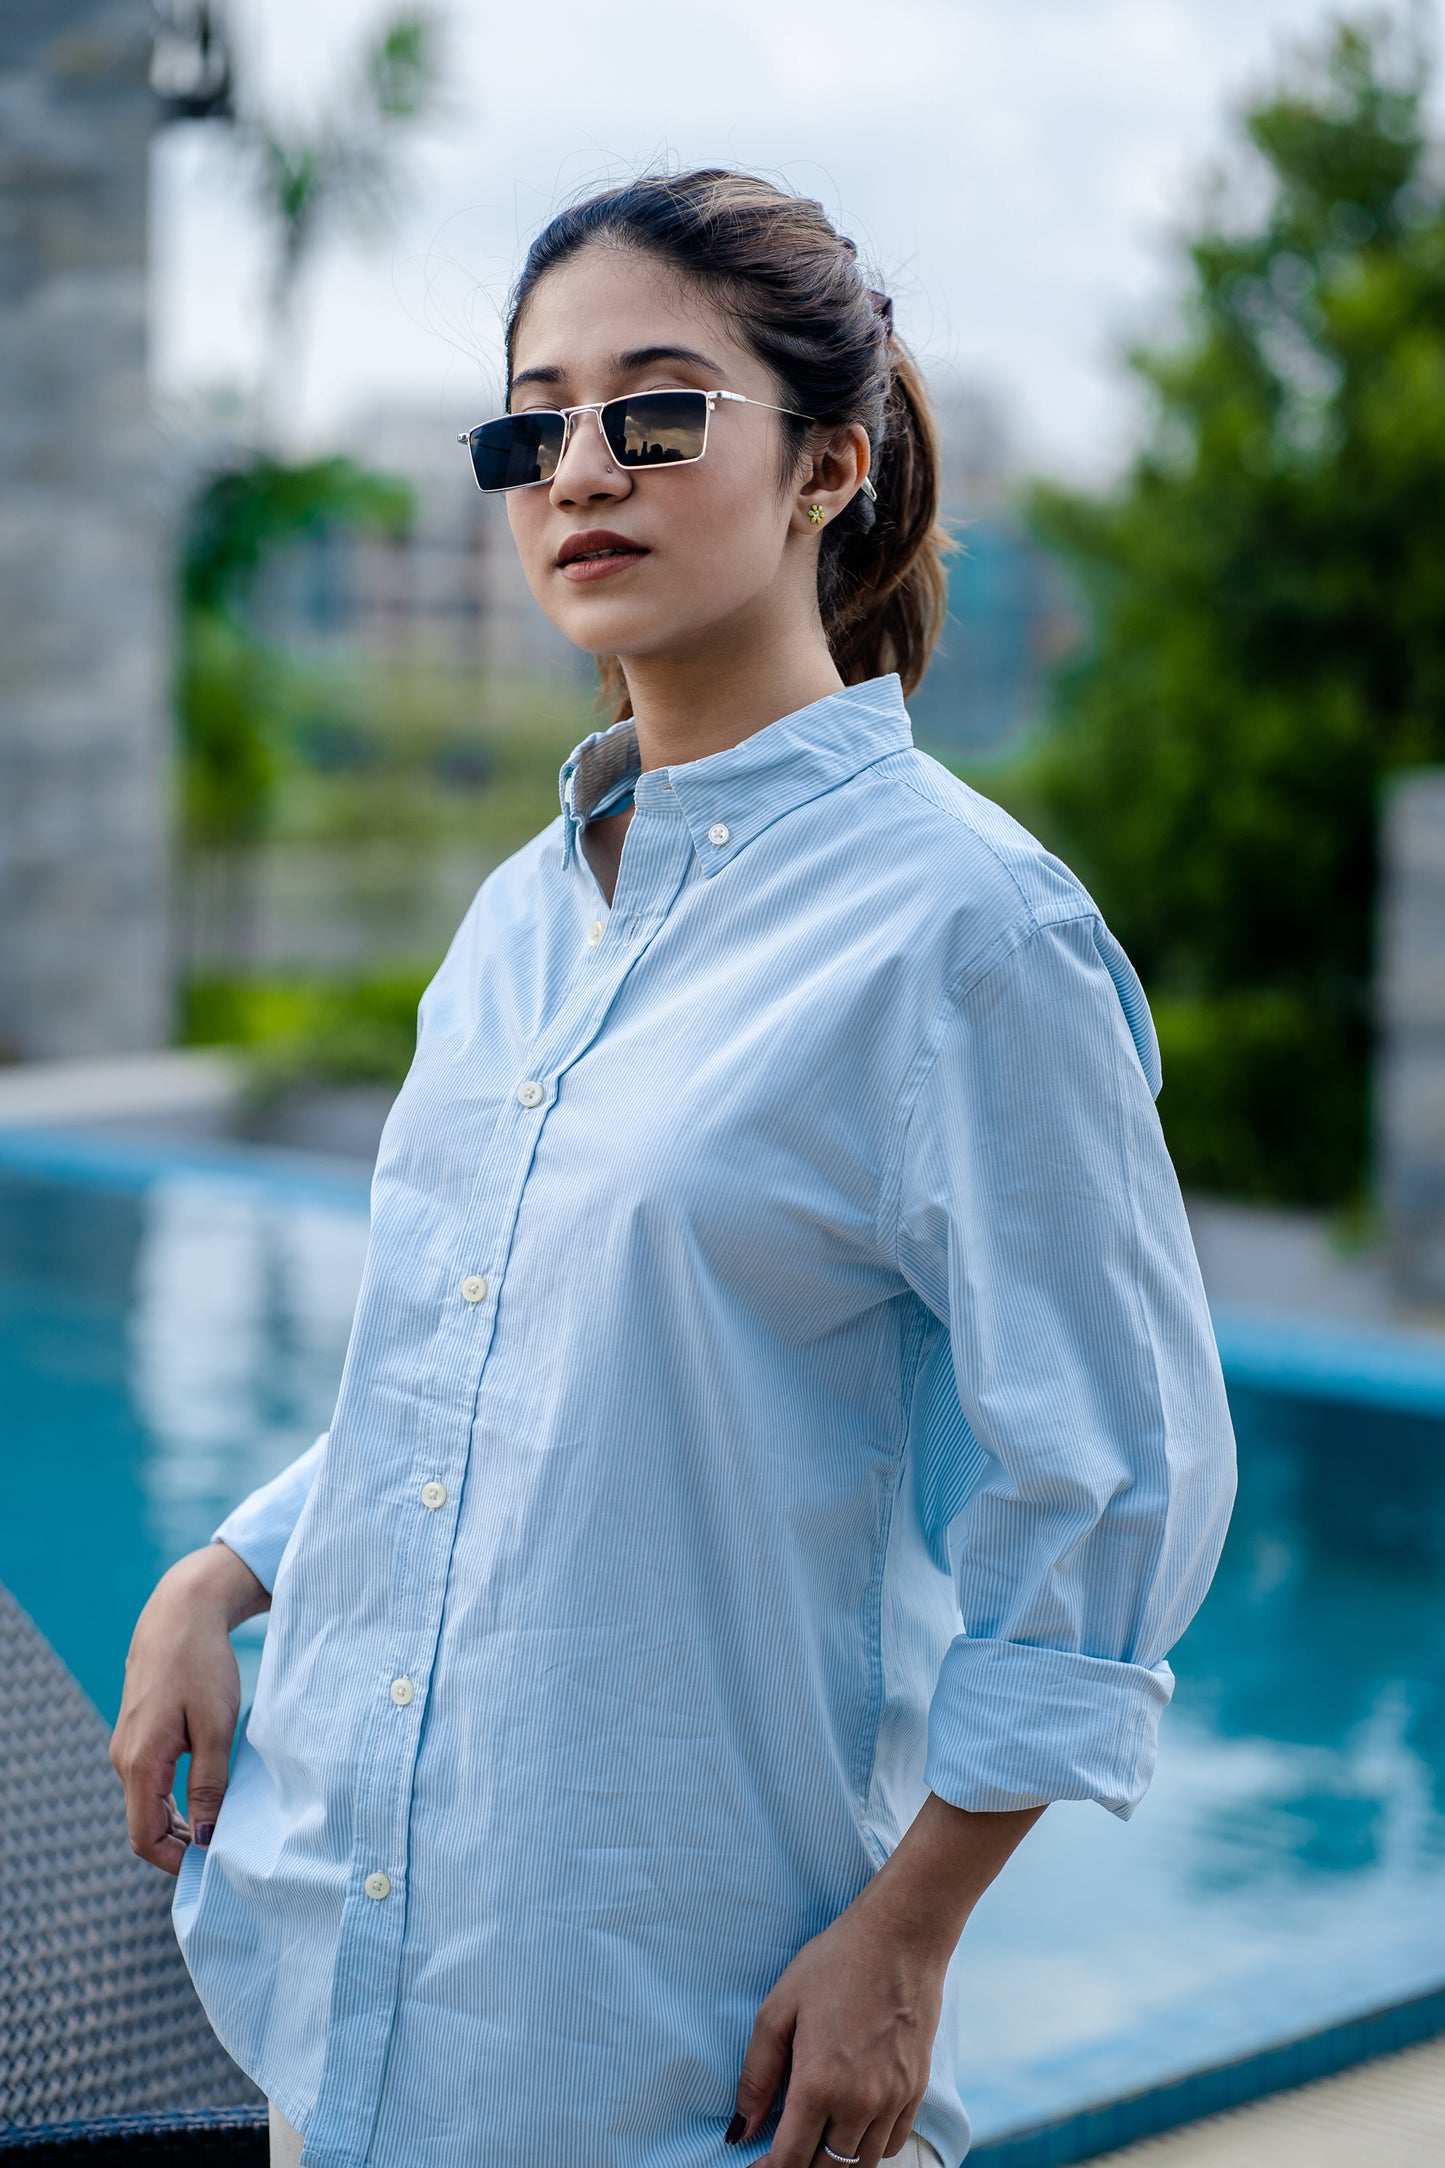 Aqua Stripe - Casual Shirt For Women